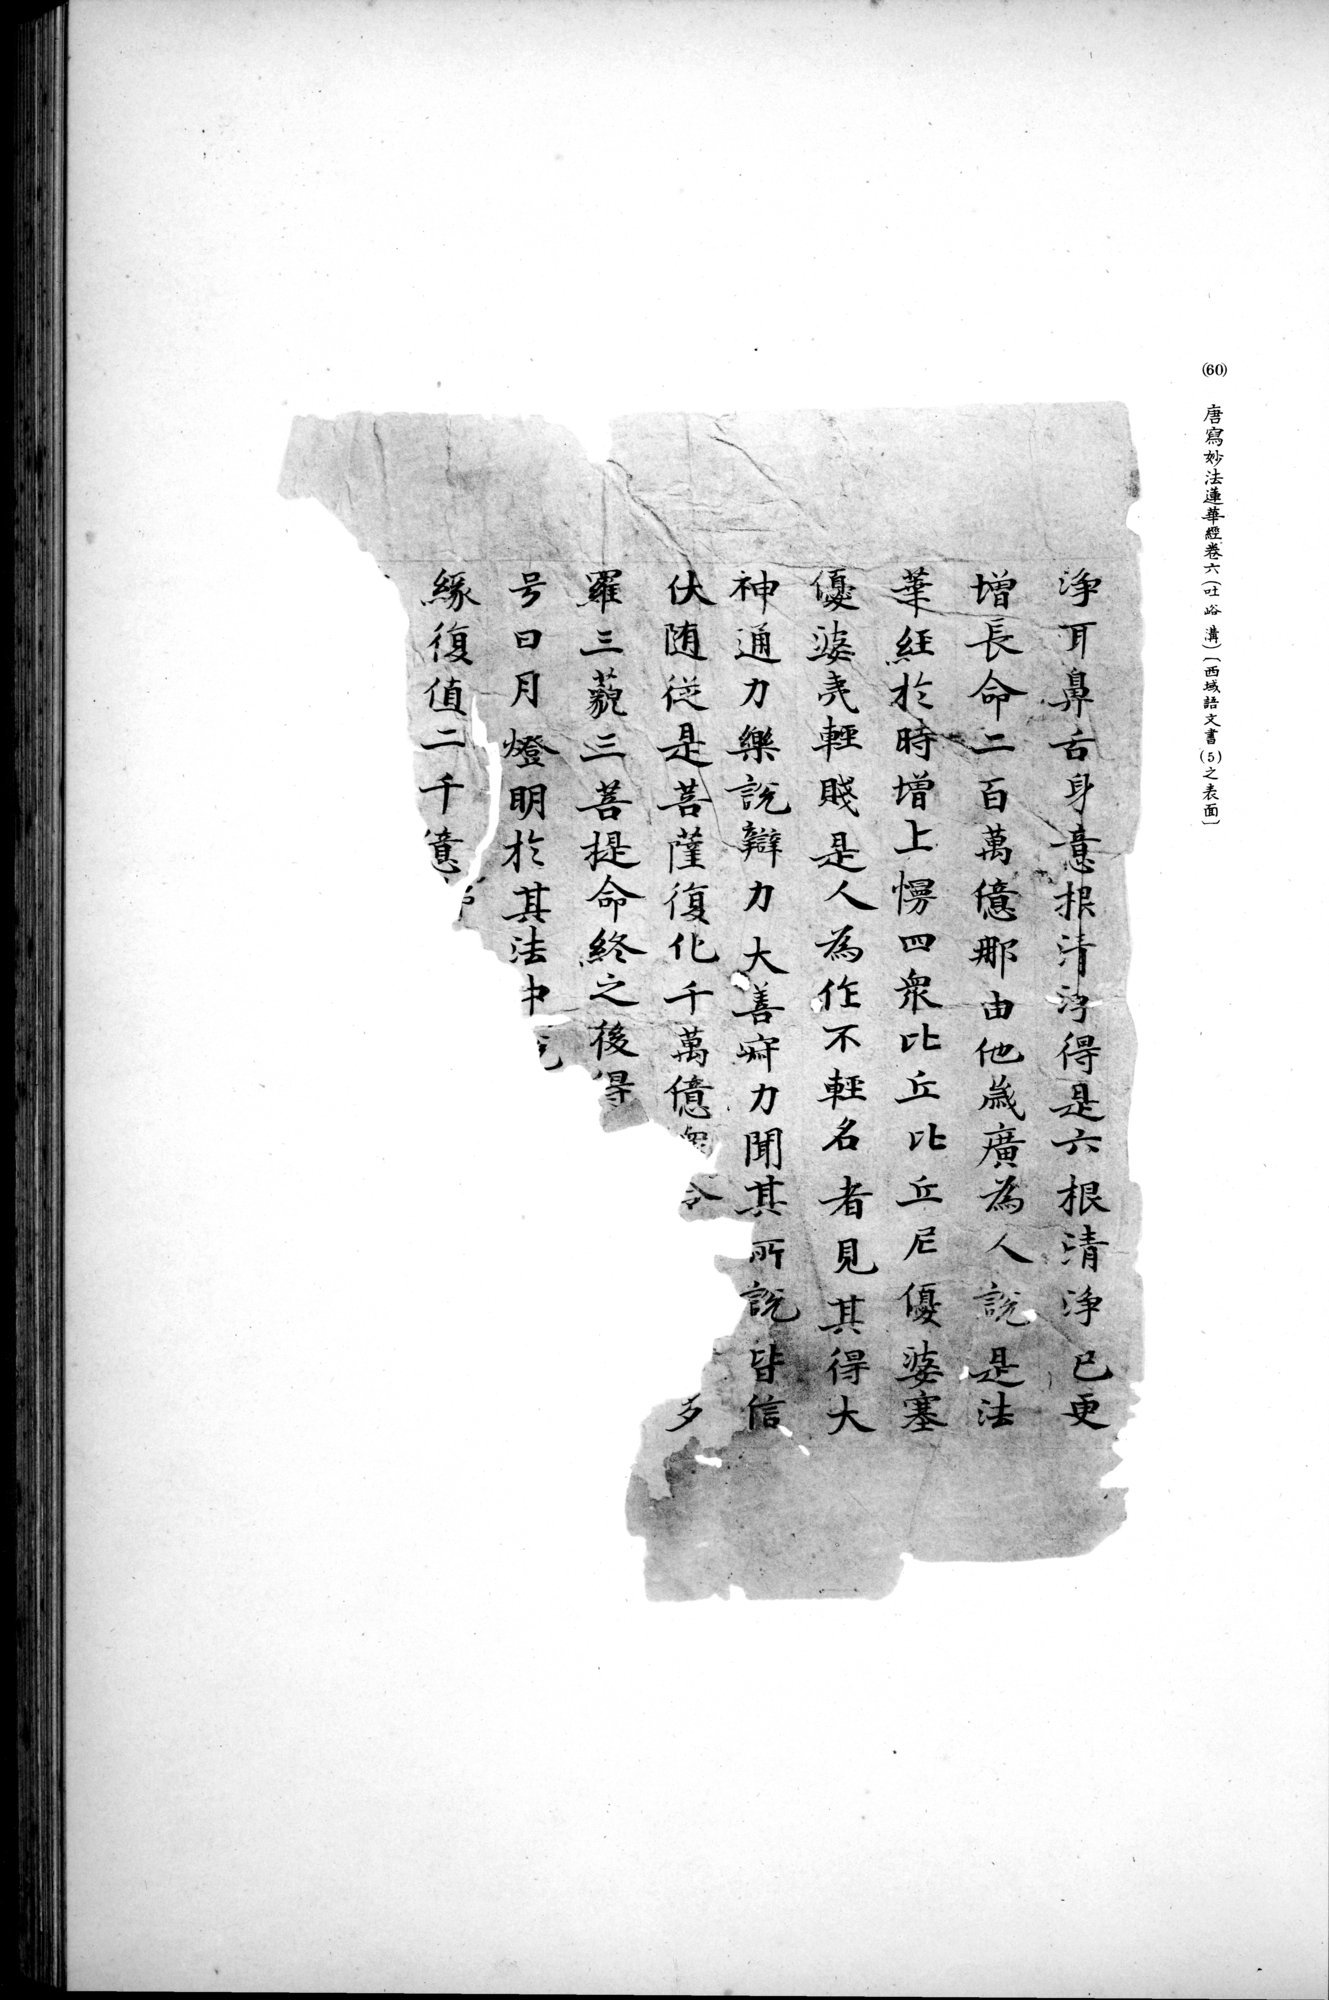 西域考古図譜 : vol.2 / 135 ページ（白黒高解像度画像）